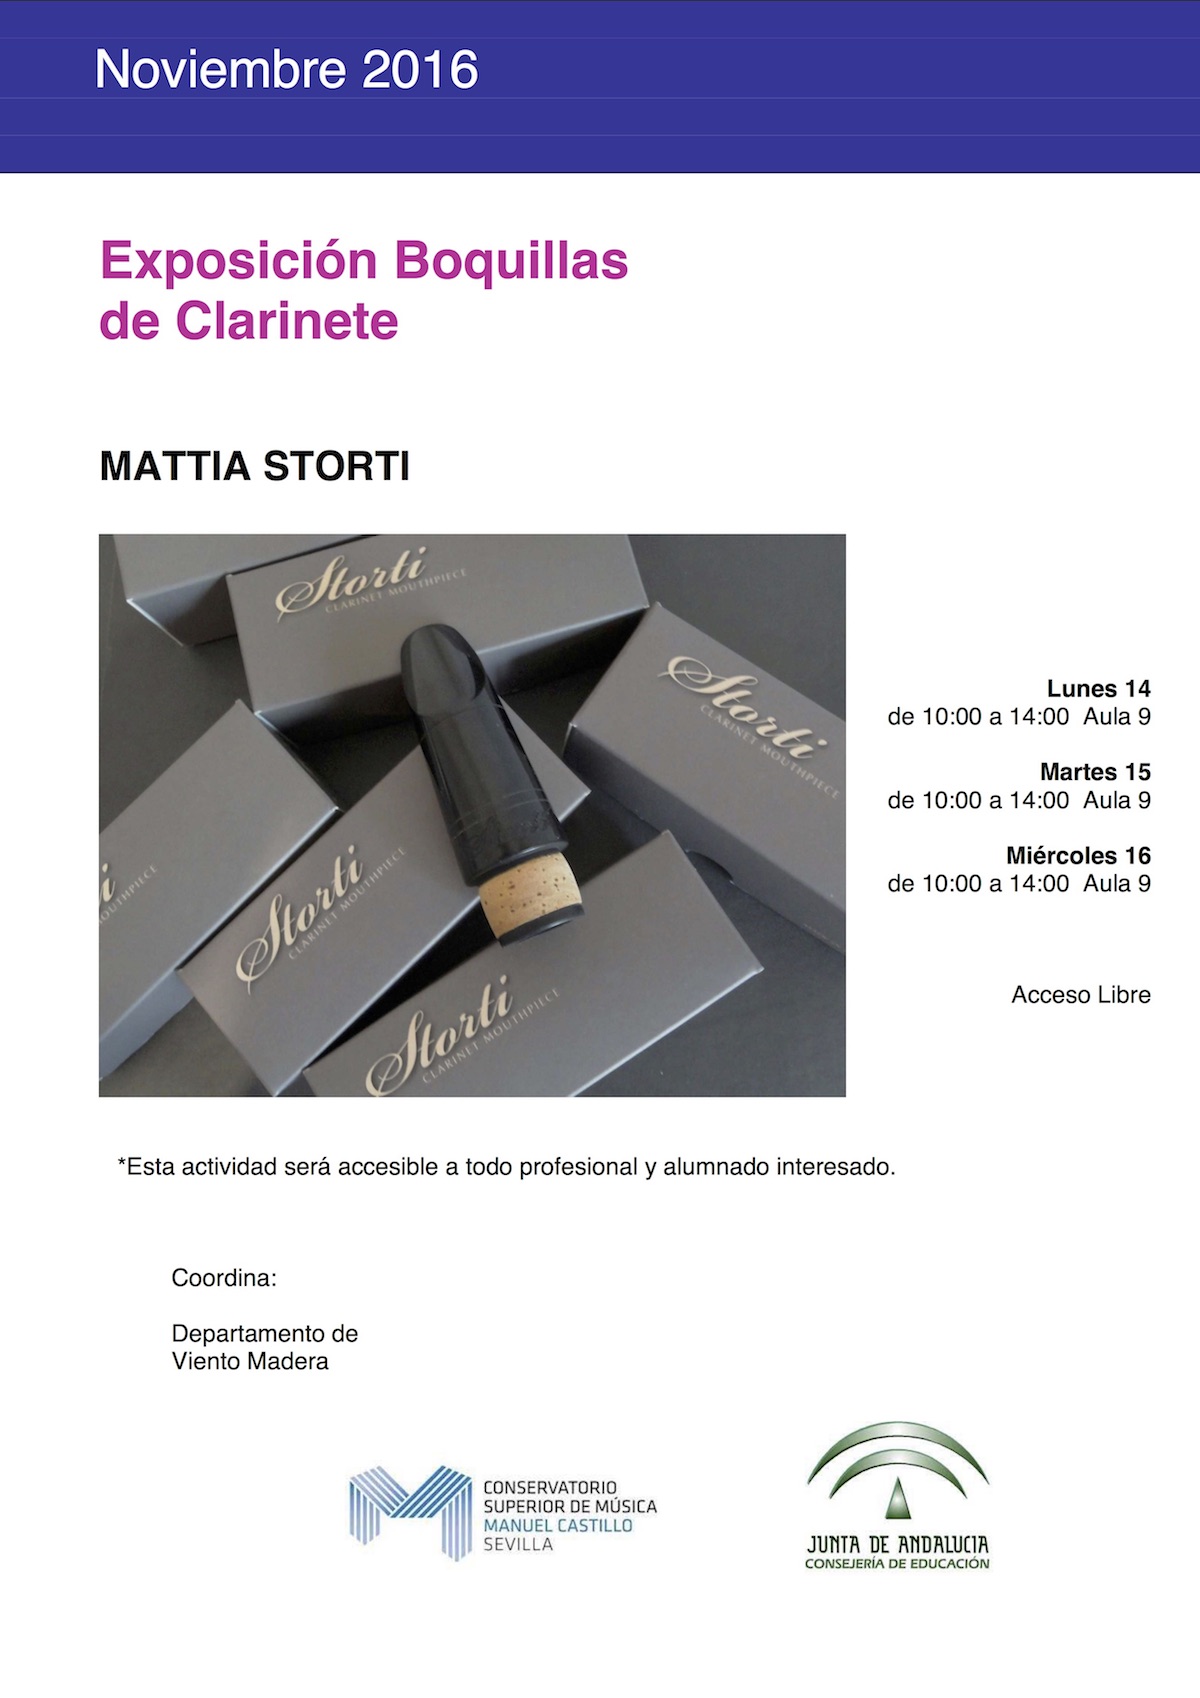 Exposición Boquillas de Clarinete — Mattia Storti